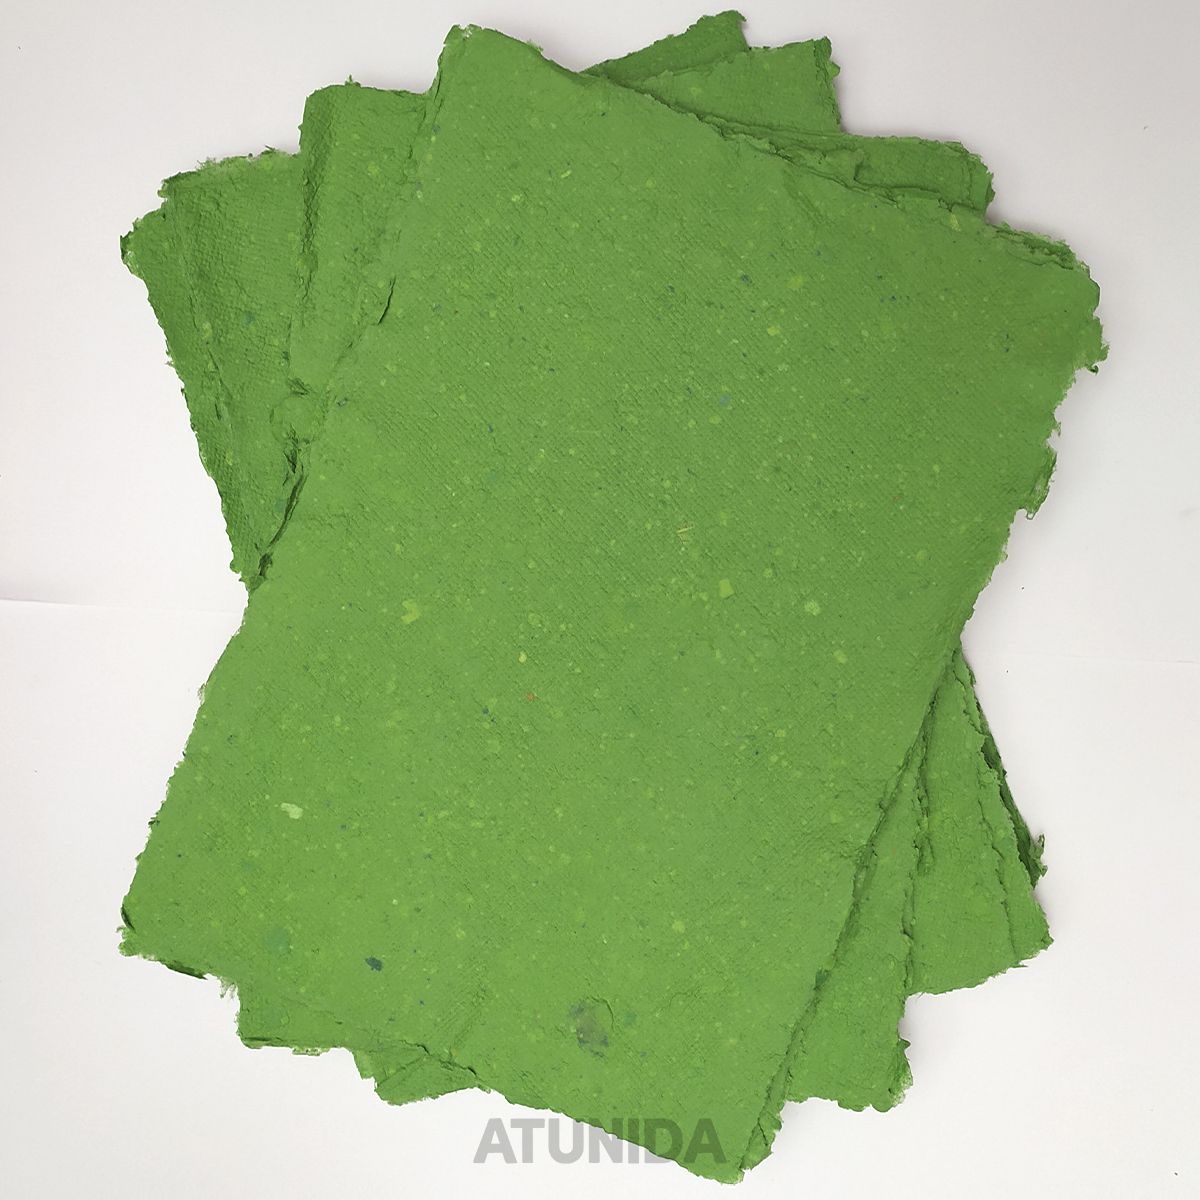 Papel Artesanal Reciclado en color verde